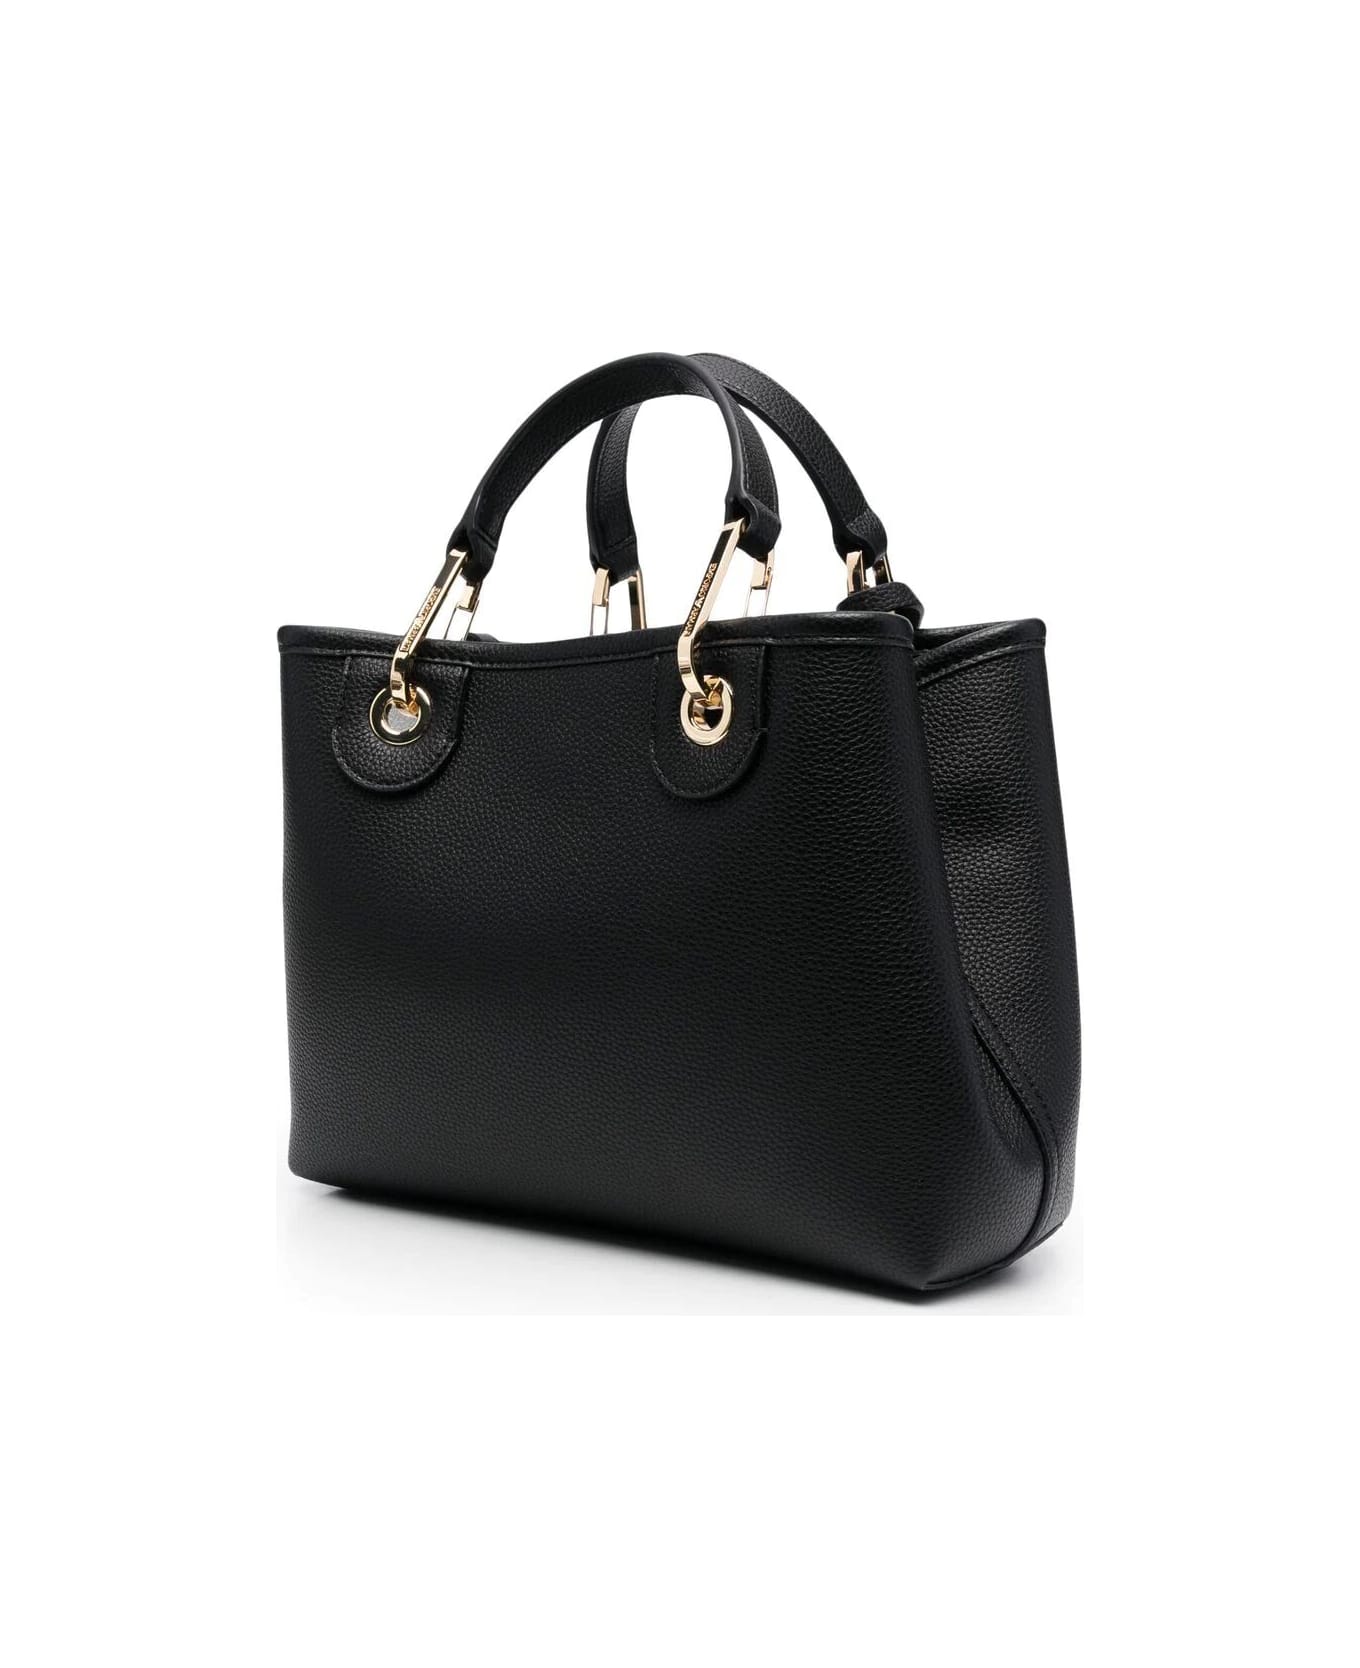 Emporio Armani Shopping Bag - Black Silver